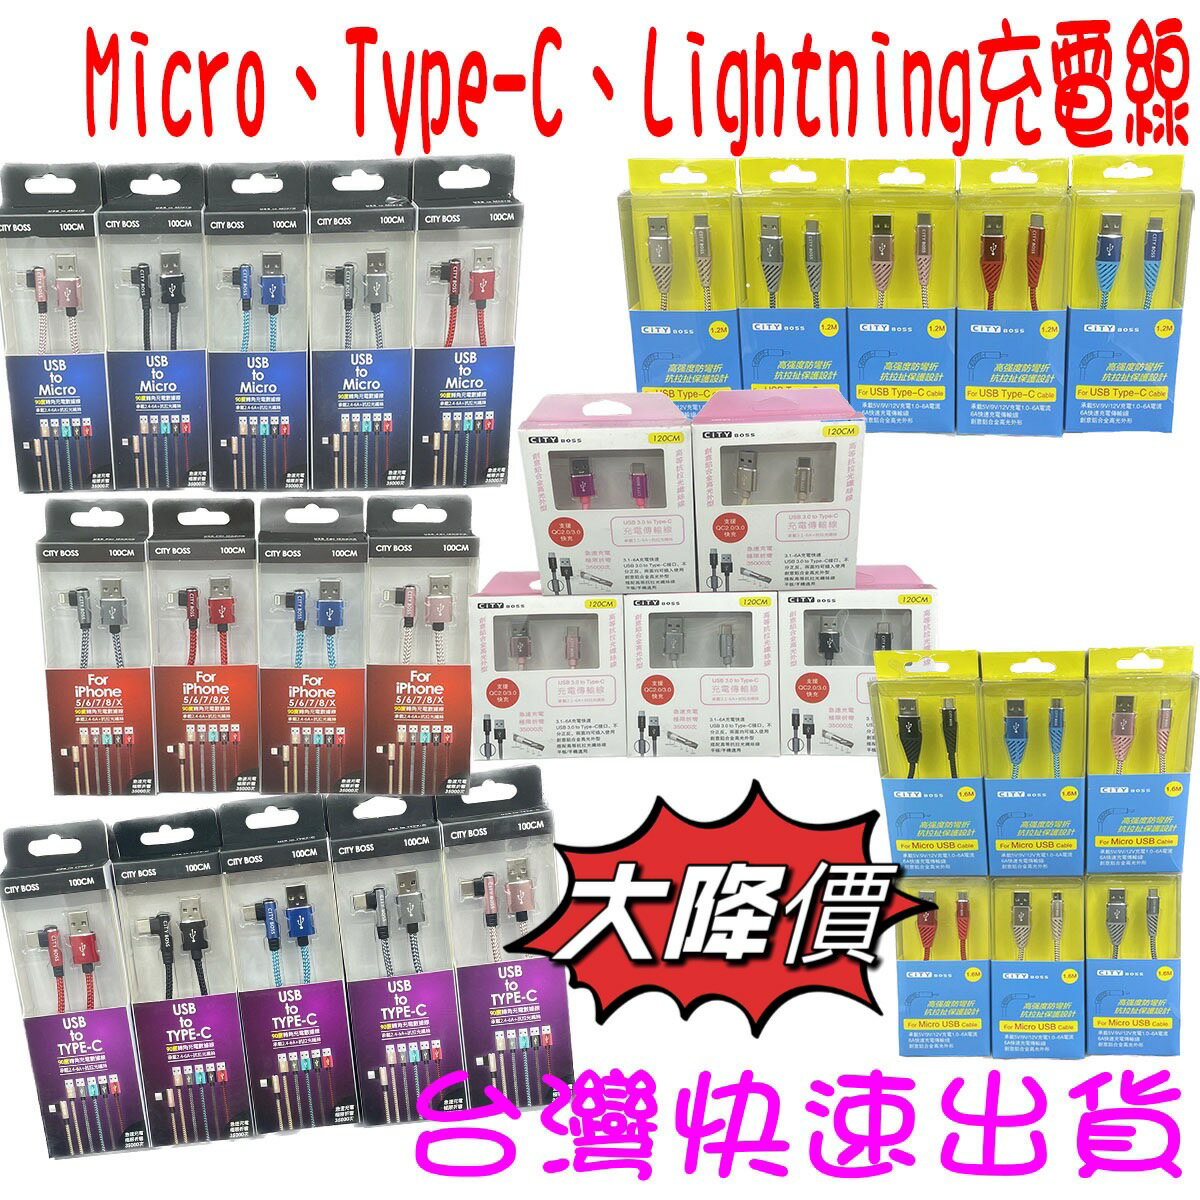 ★優惠 出清 特賣★ City Boss Micro Type-C Lightning 充電線 快充線 傳輸線 USB